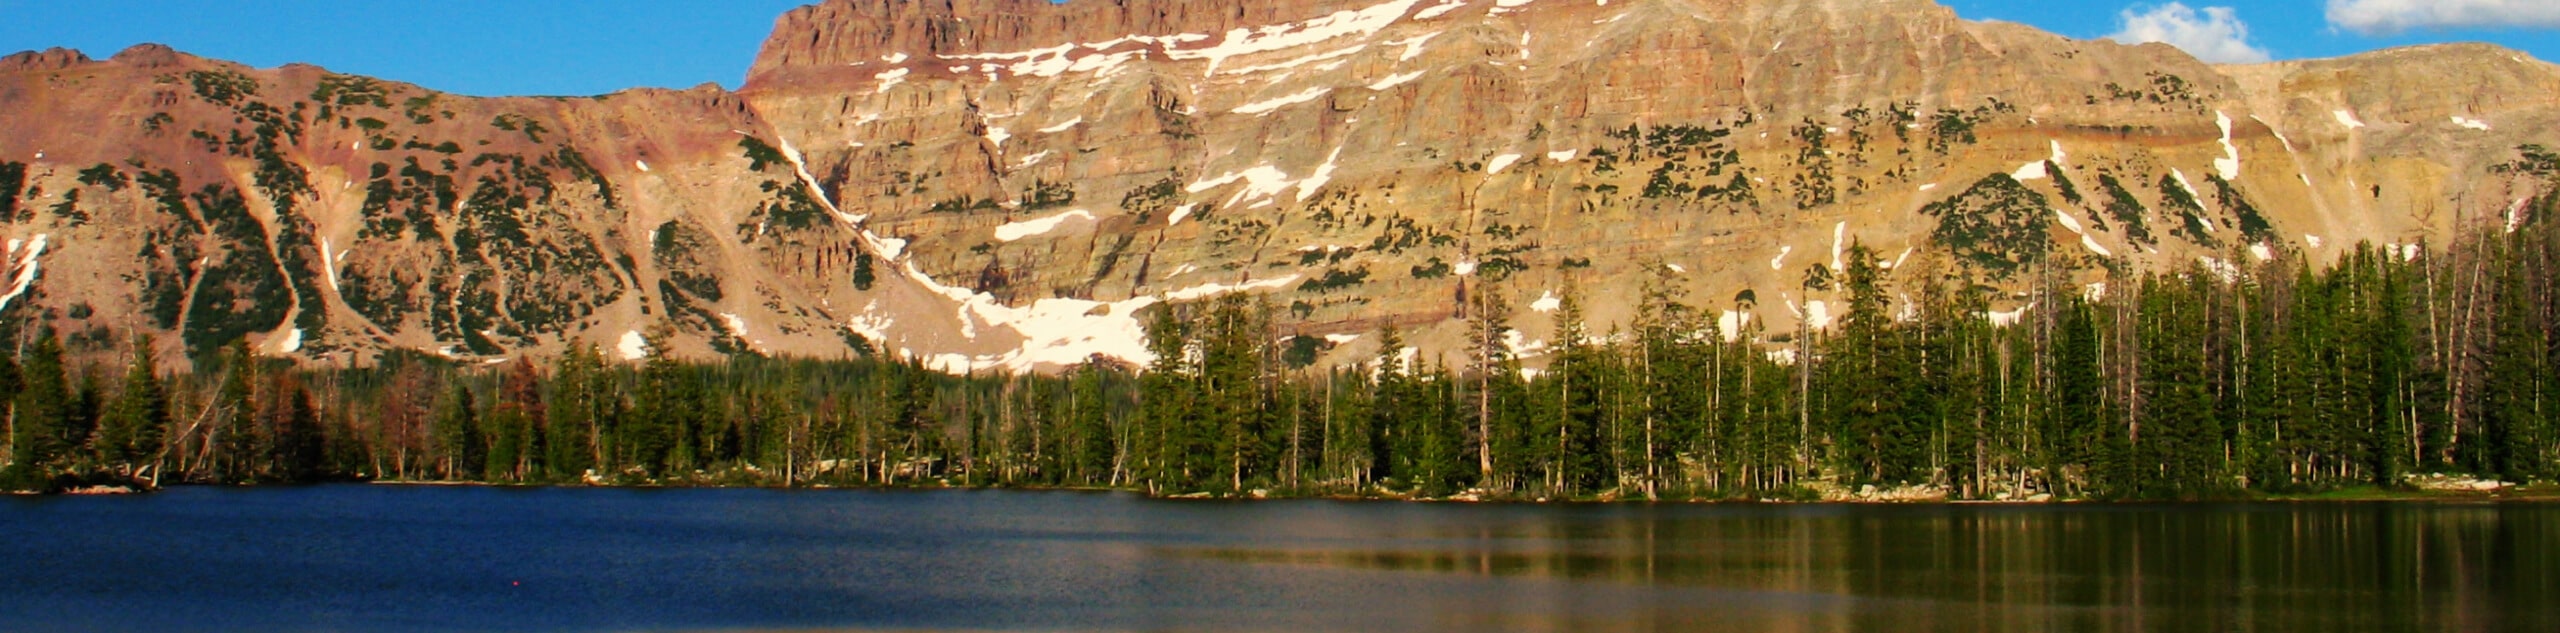 Teal Lake via the Ruth Lake Trail